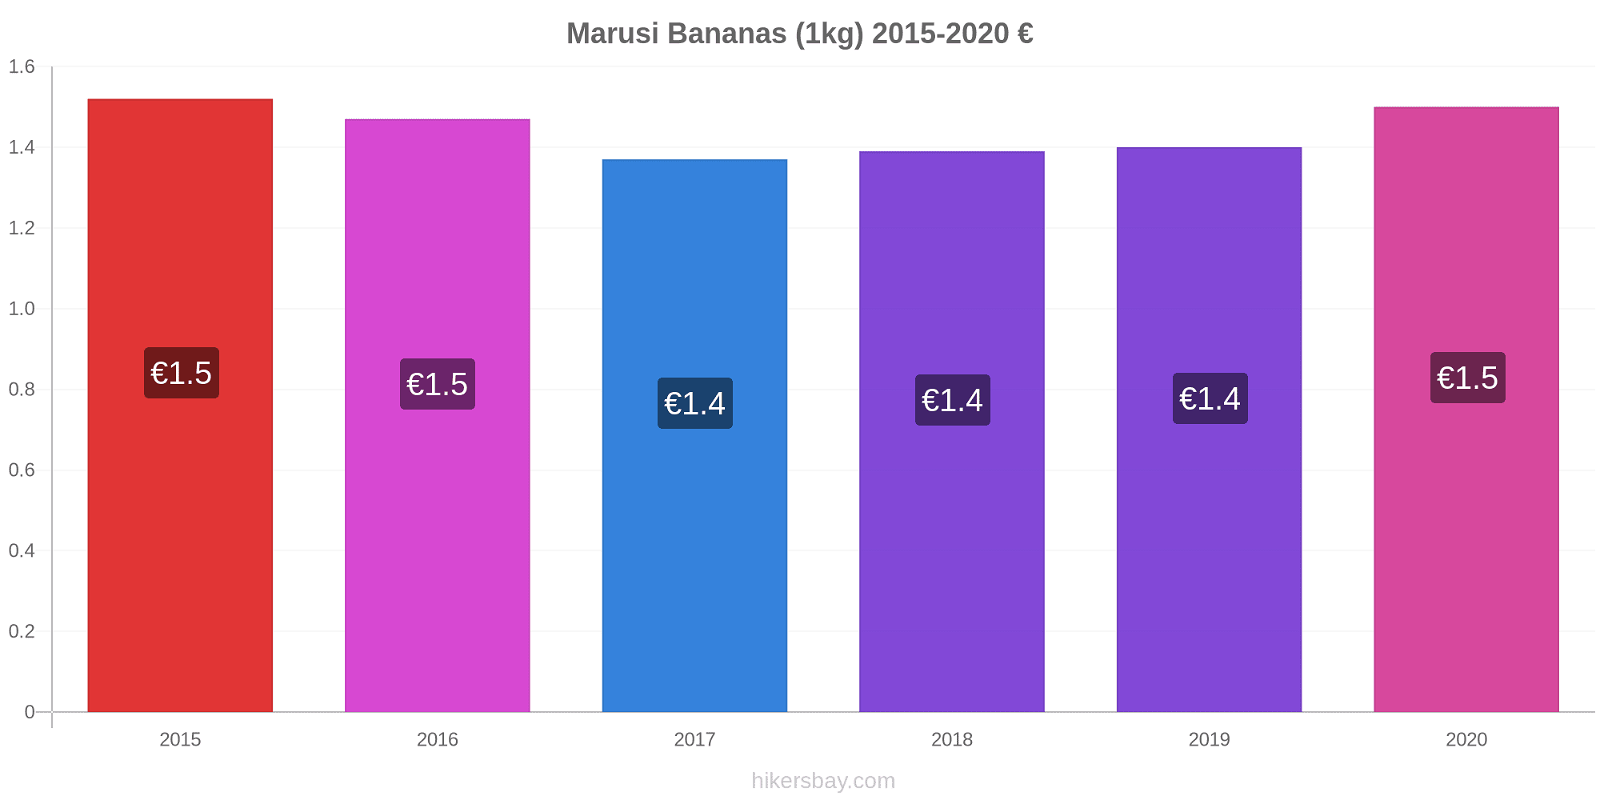 Marusi variação de preço Banana (1kg) hikersbay.com